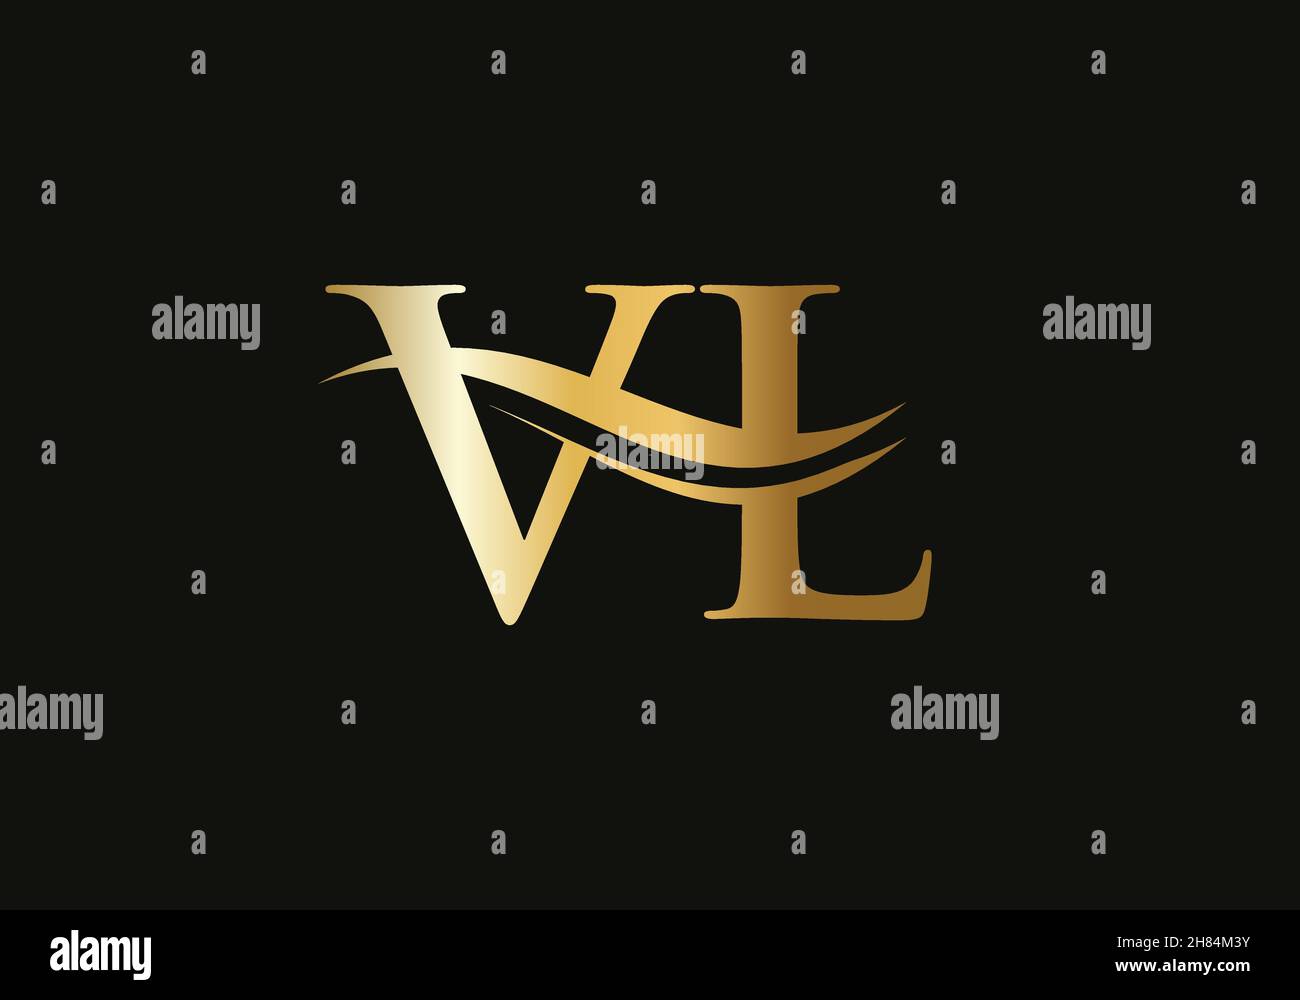 V L Initial letter hexagonal logo vector